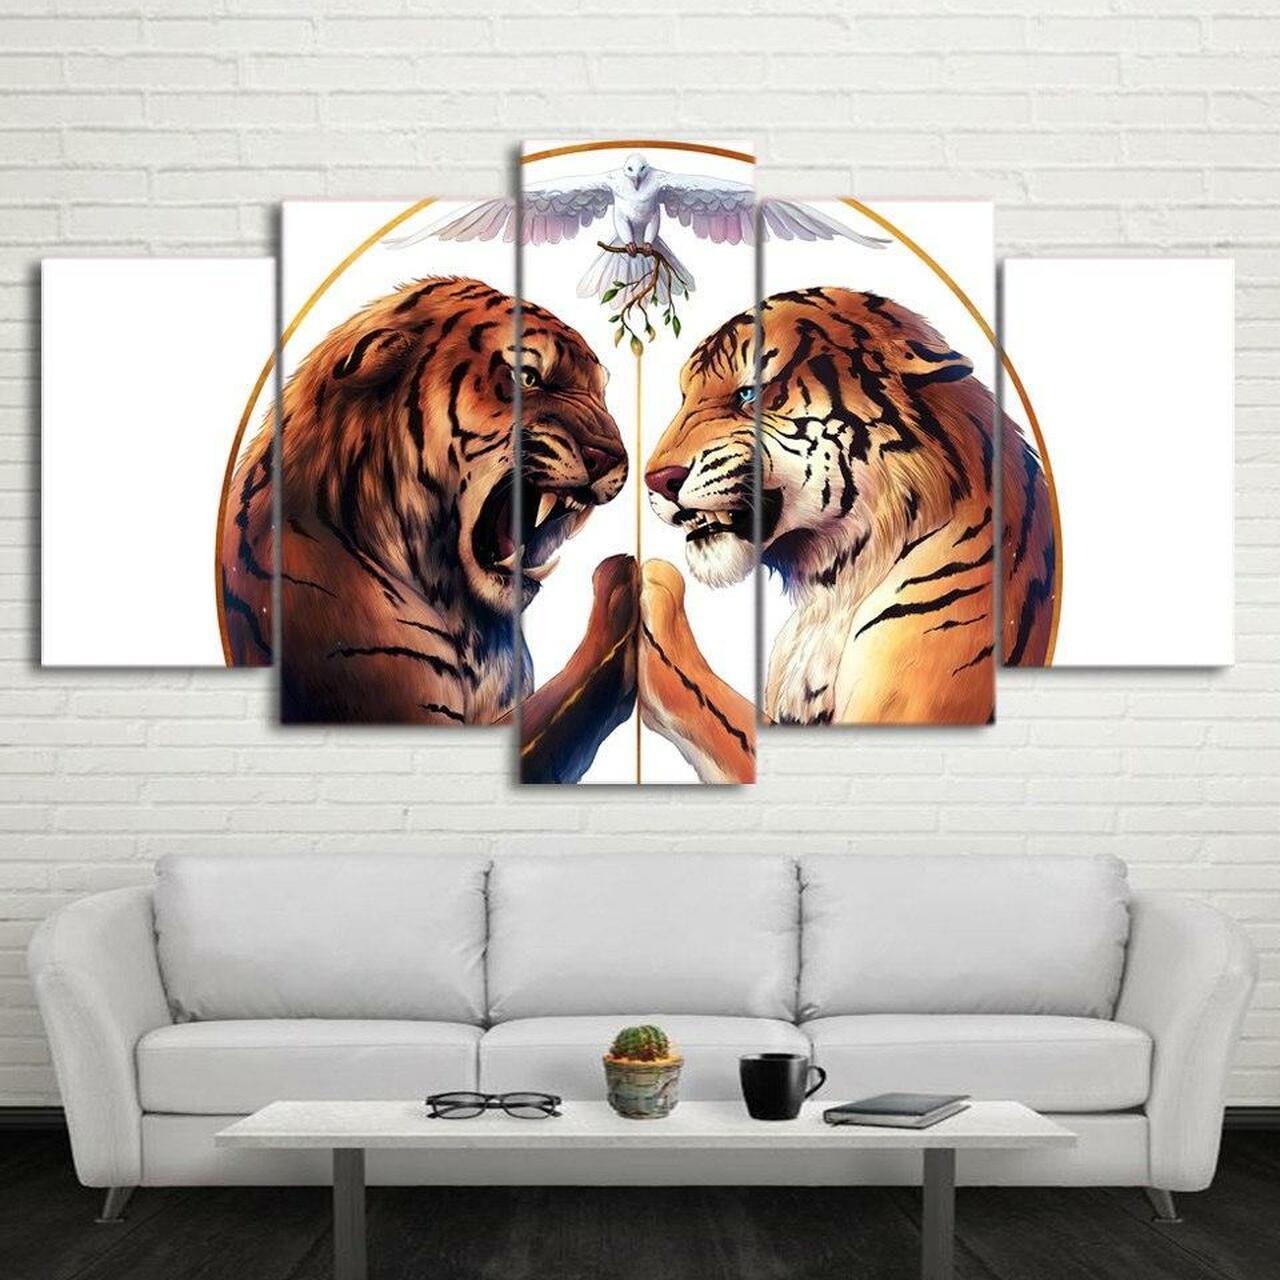 peace two tigers 5 pices peinture sur toile impression sur toile toile art pour la dcoration